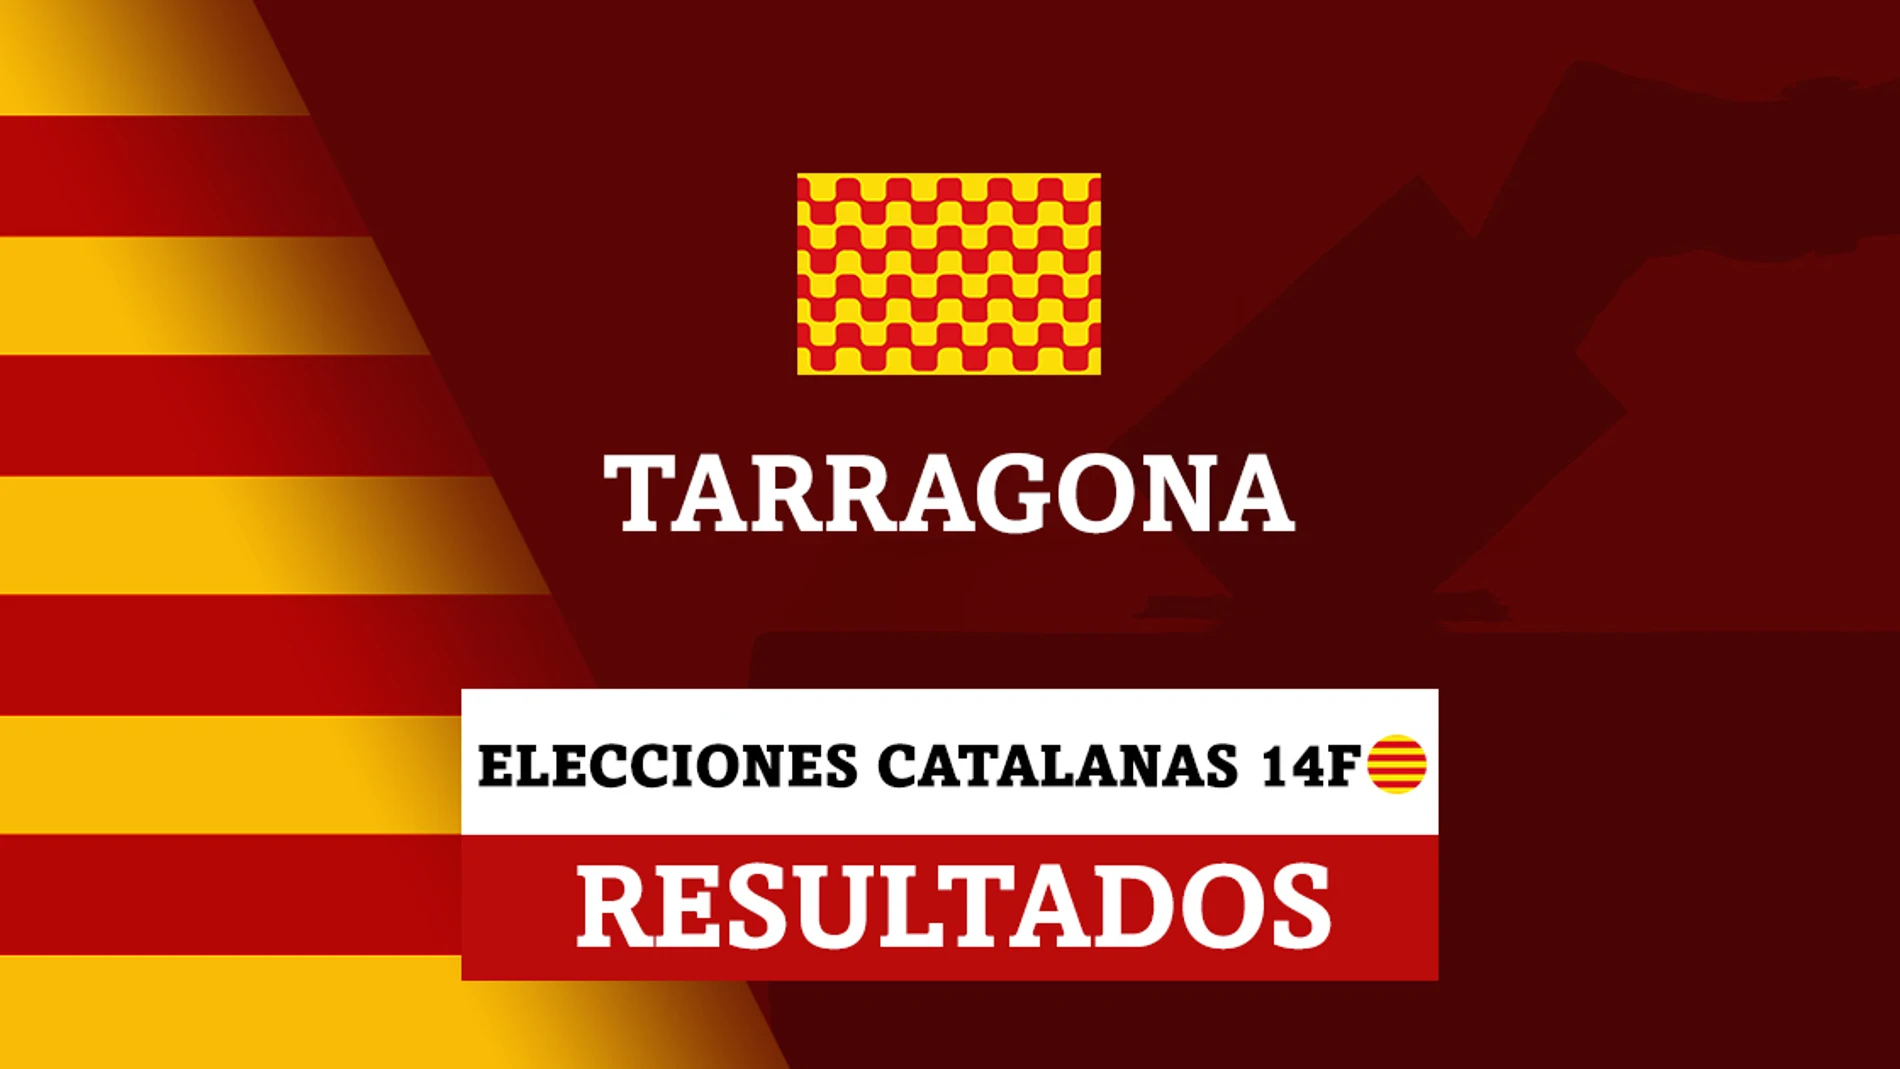 Resultados de las elecciones catalanas en Tarragona